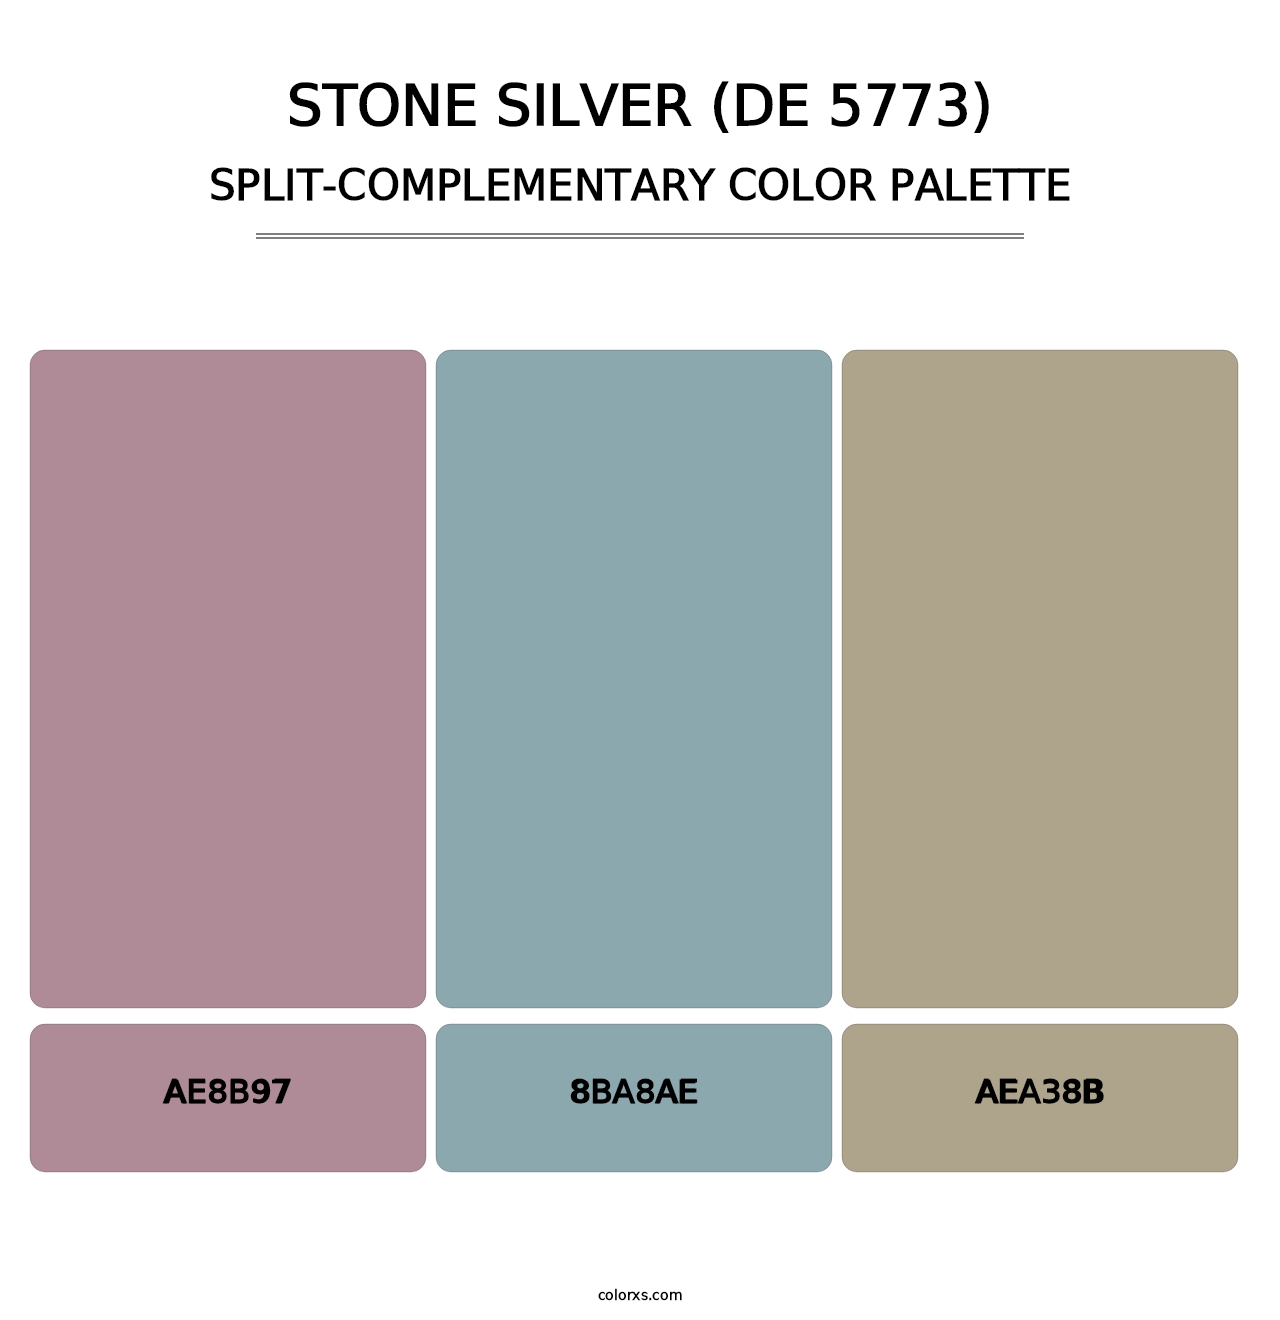 Stone Silver (DE 5773) - Split-Complementary Color Palette